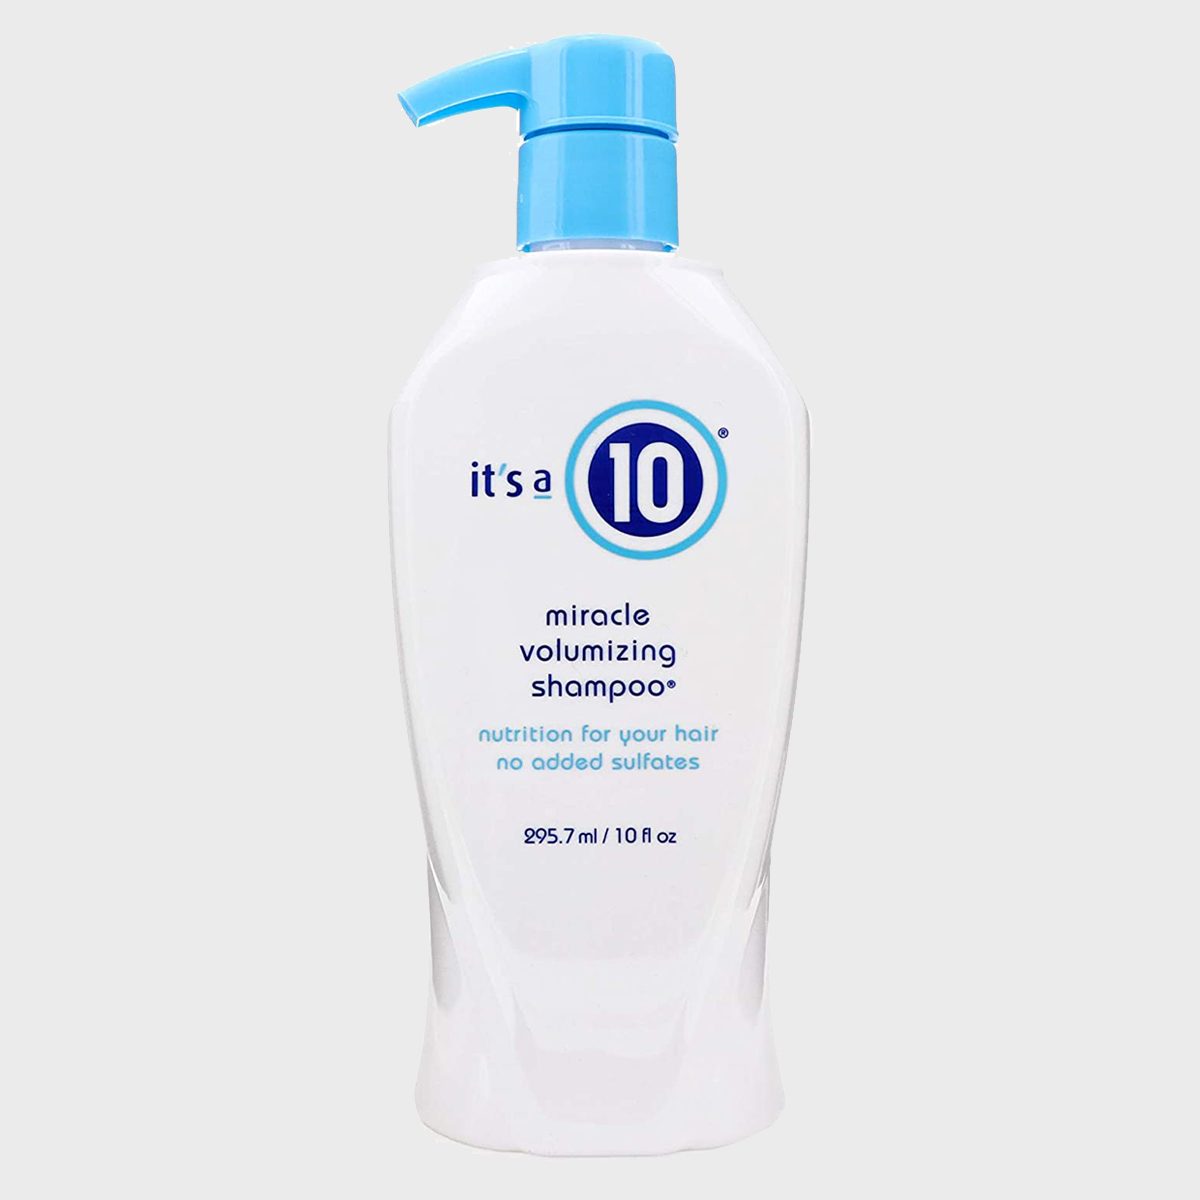 Its A 10 Miracle Volumizing Shampoo